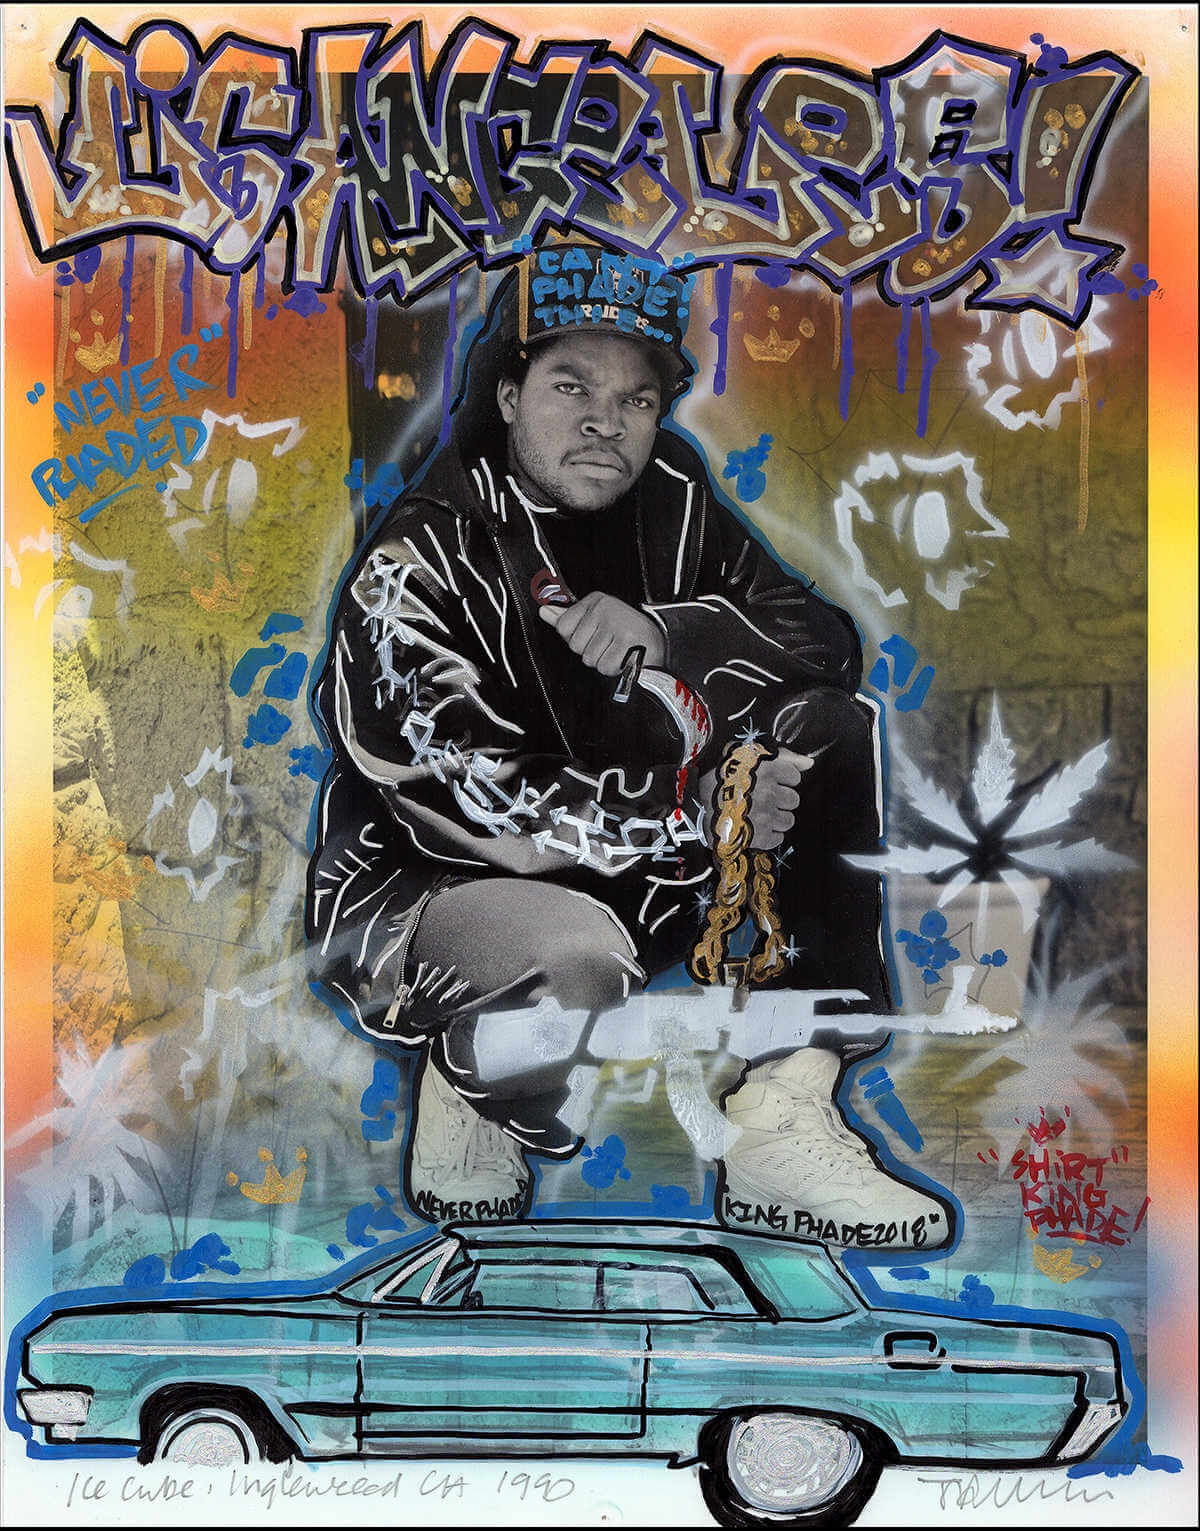 Fotograía de Ice Cube por Janette Beckman & Shirt King Phade